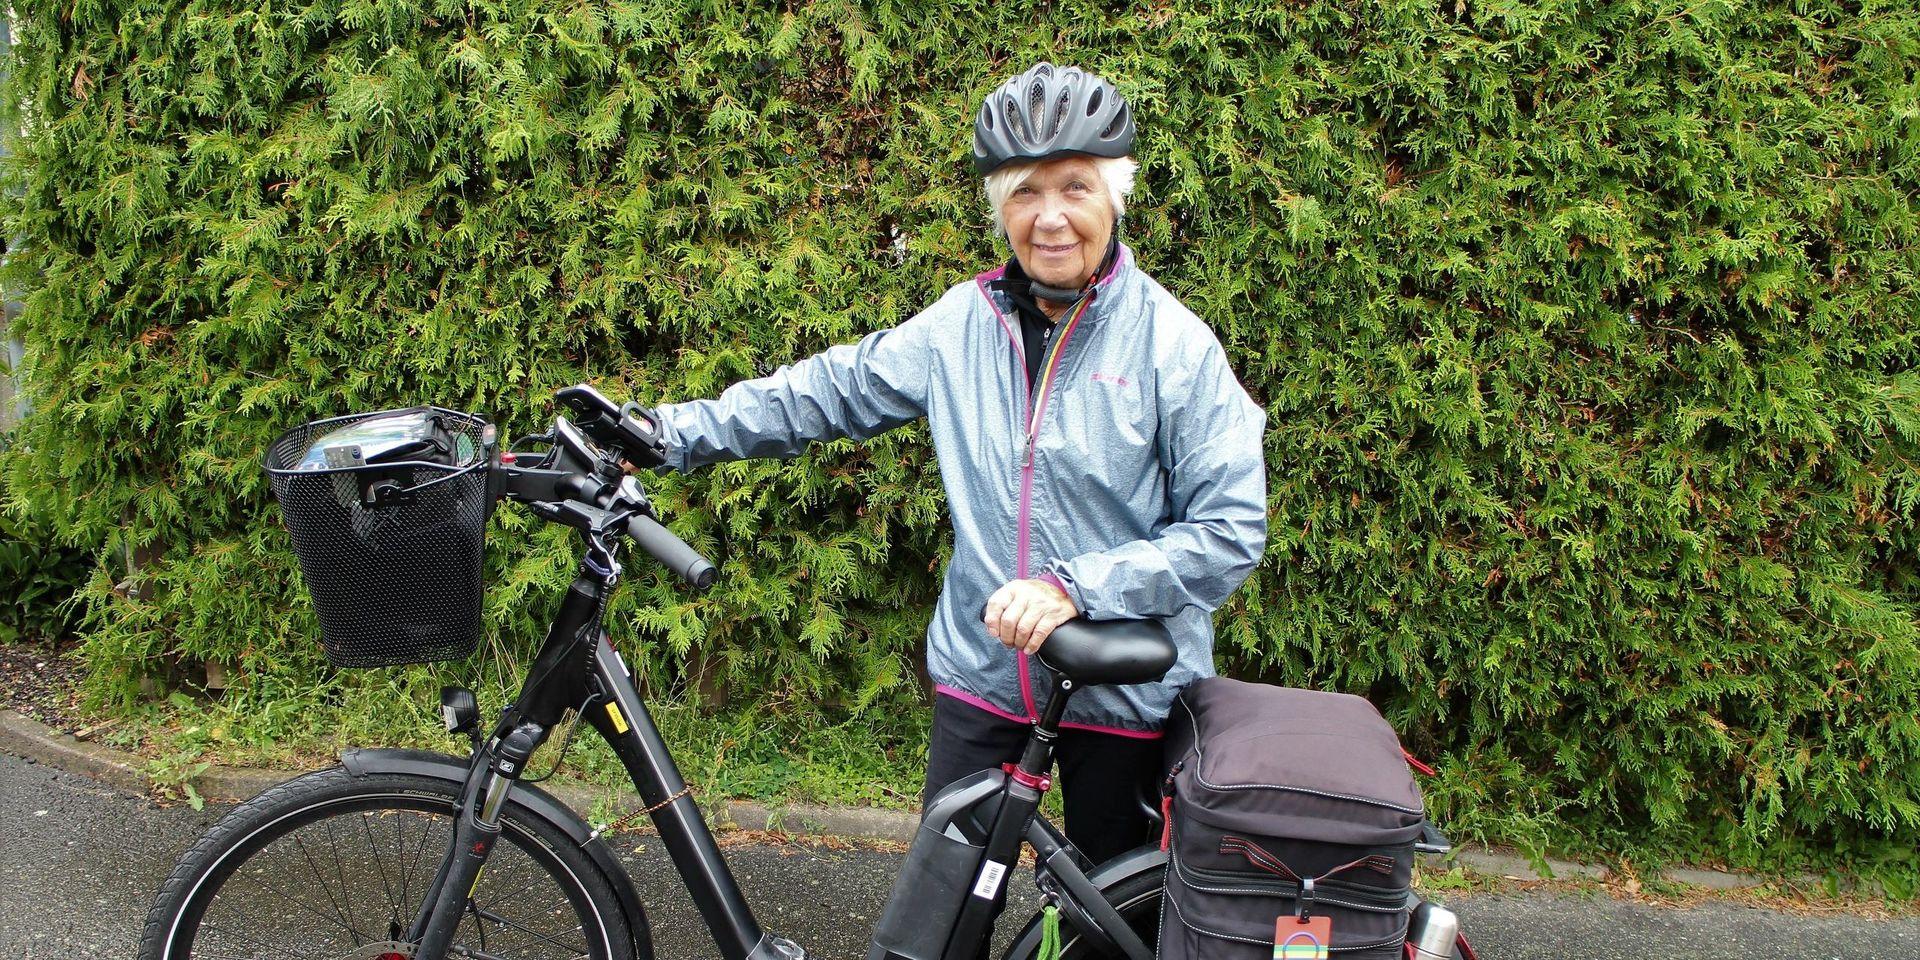 Ingrids packning under cykelturen upp genom Europa vägde inte mer än tio kilo.